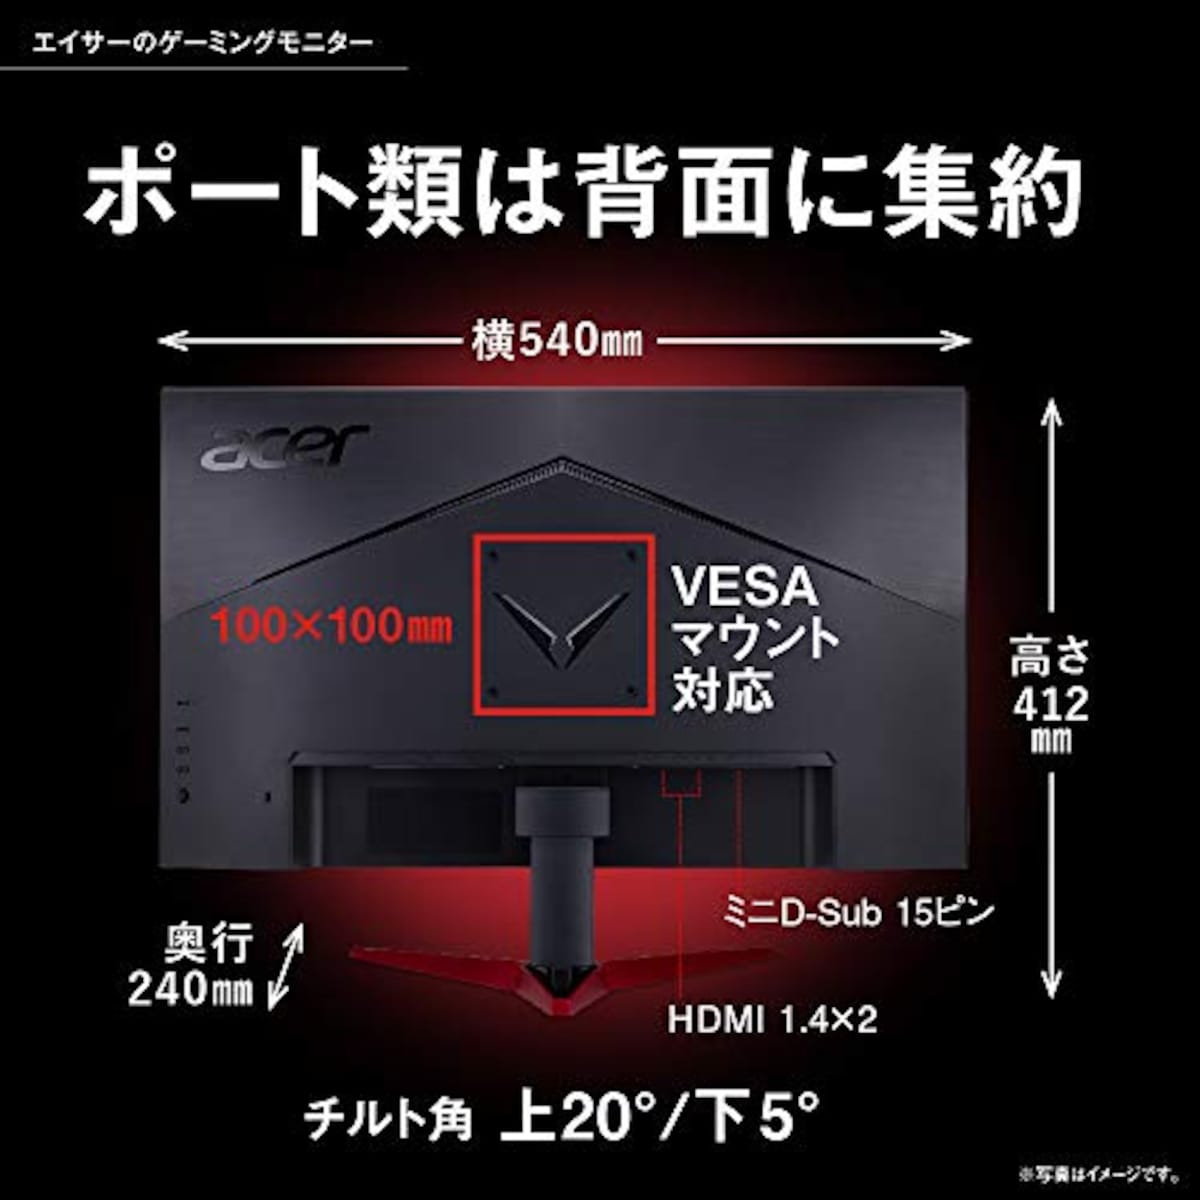  Acer ゲーミングモニター Nitro VG240Ybmiifx 23.8インチ IPS 非光沢 フルHD 1ms(VRB) 75Hz FPS向き FreeSync フレームレスデザイン HDMIx2 スピーカー内蔵 VESAマウント対応 チルト フリッカーレス ブルーライト軽減画像7 